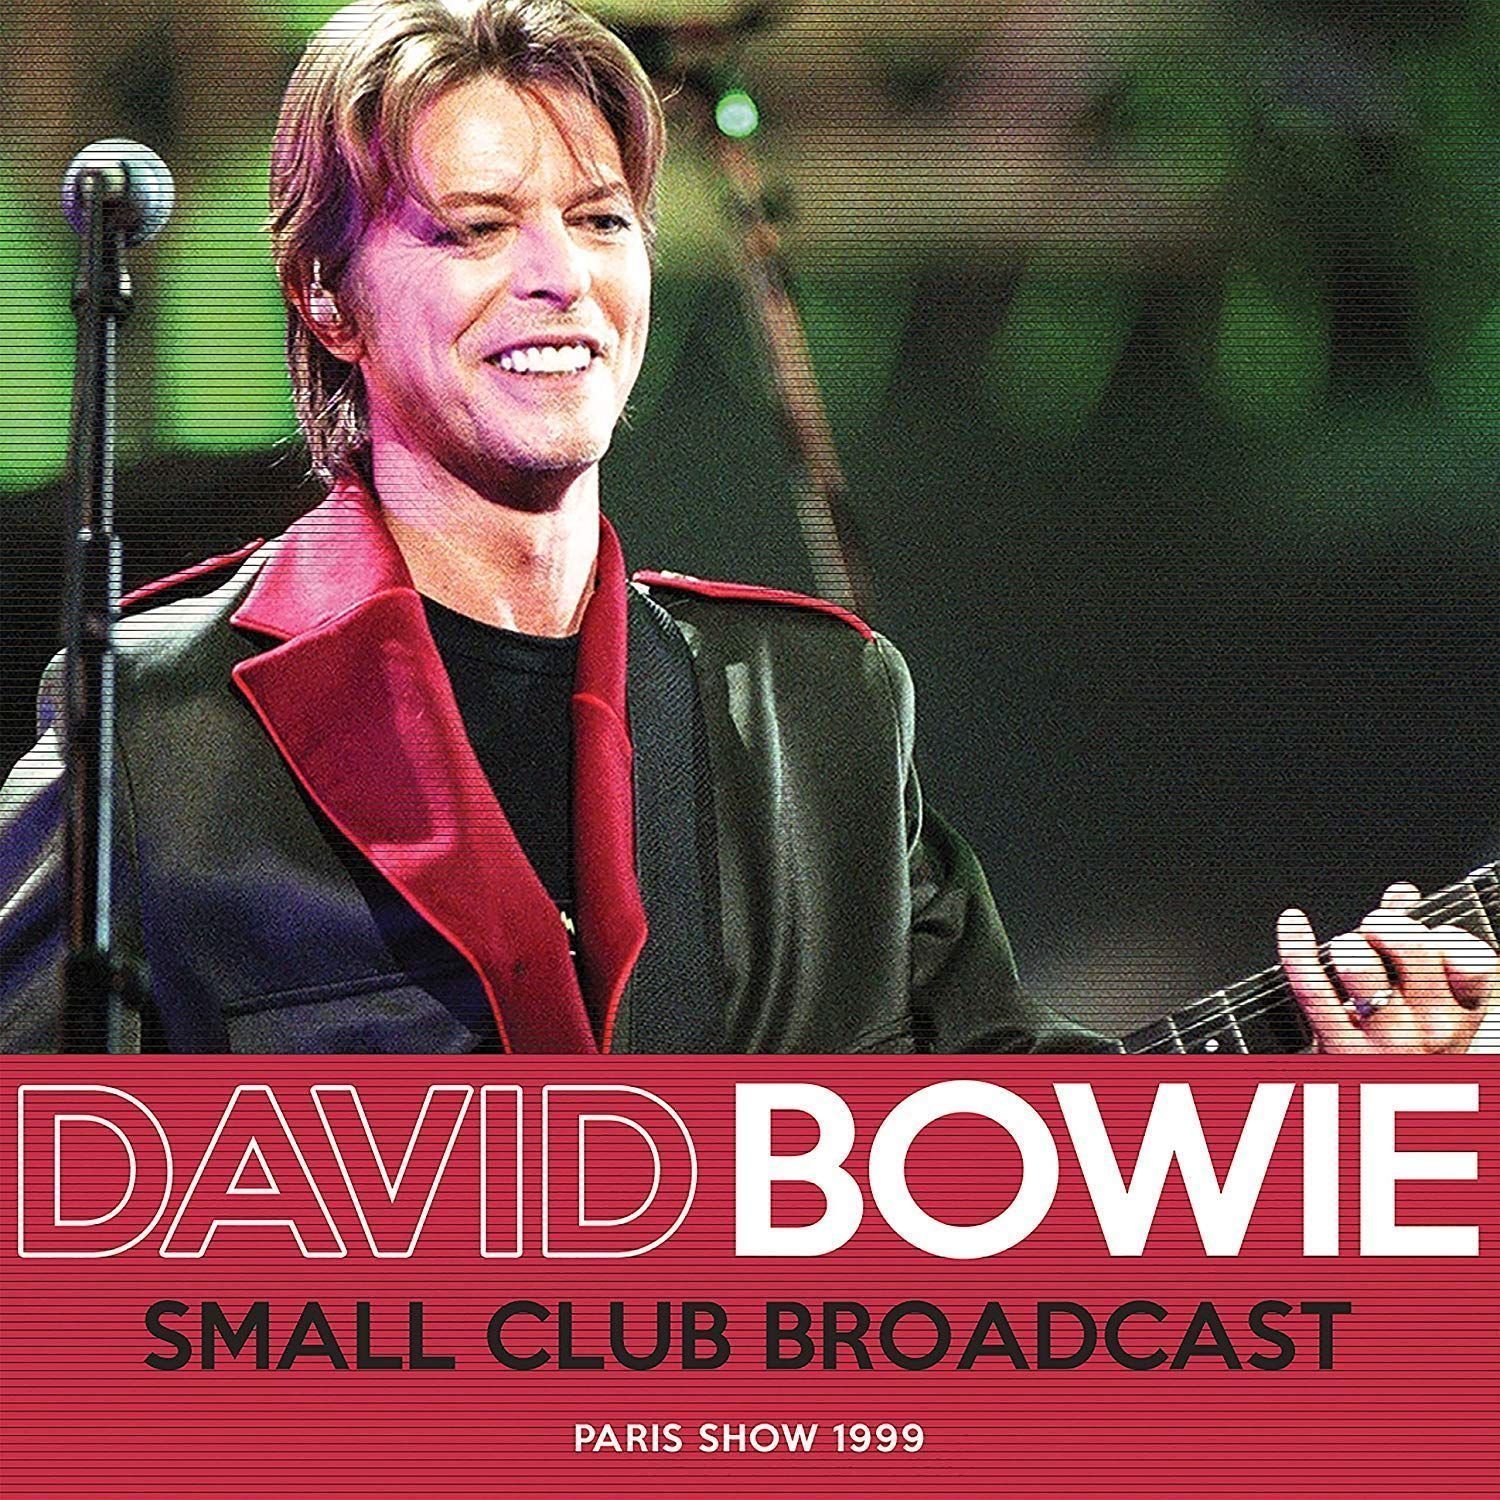 Hanglemez David Bowie - Small Club Broadcast: Paris Show 1999 (2 LP)